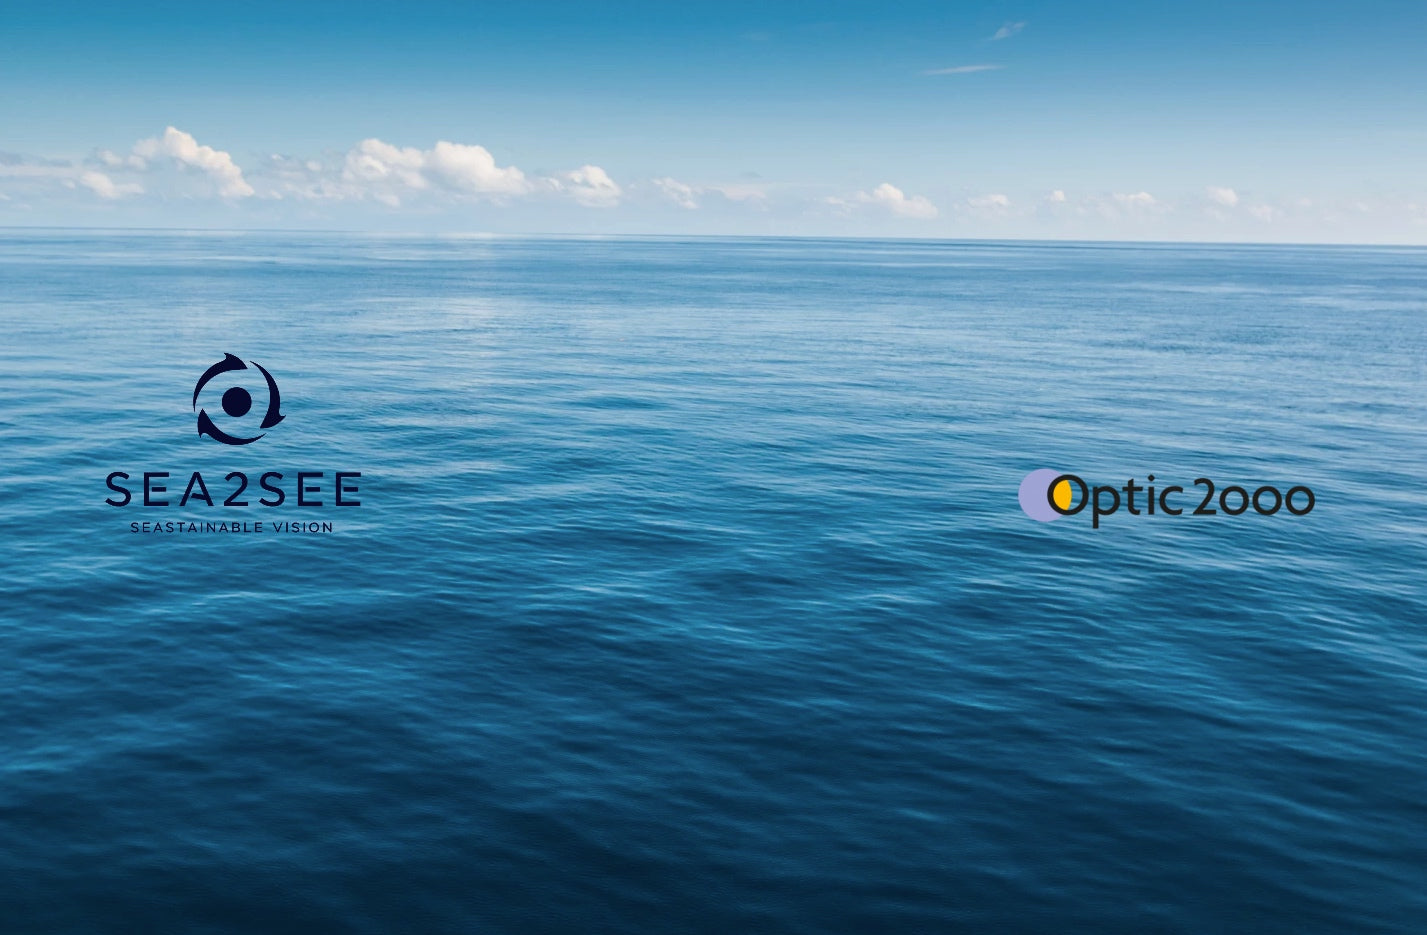 Sea2see Optic2000 Zusammenarbeit